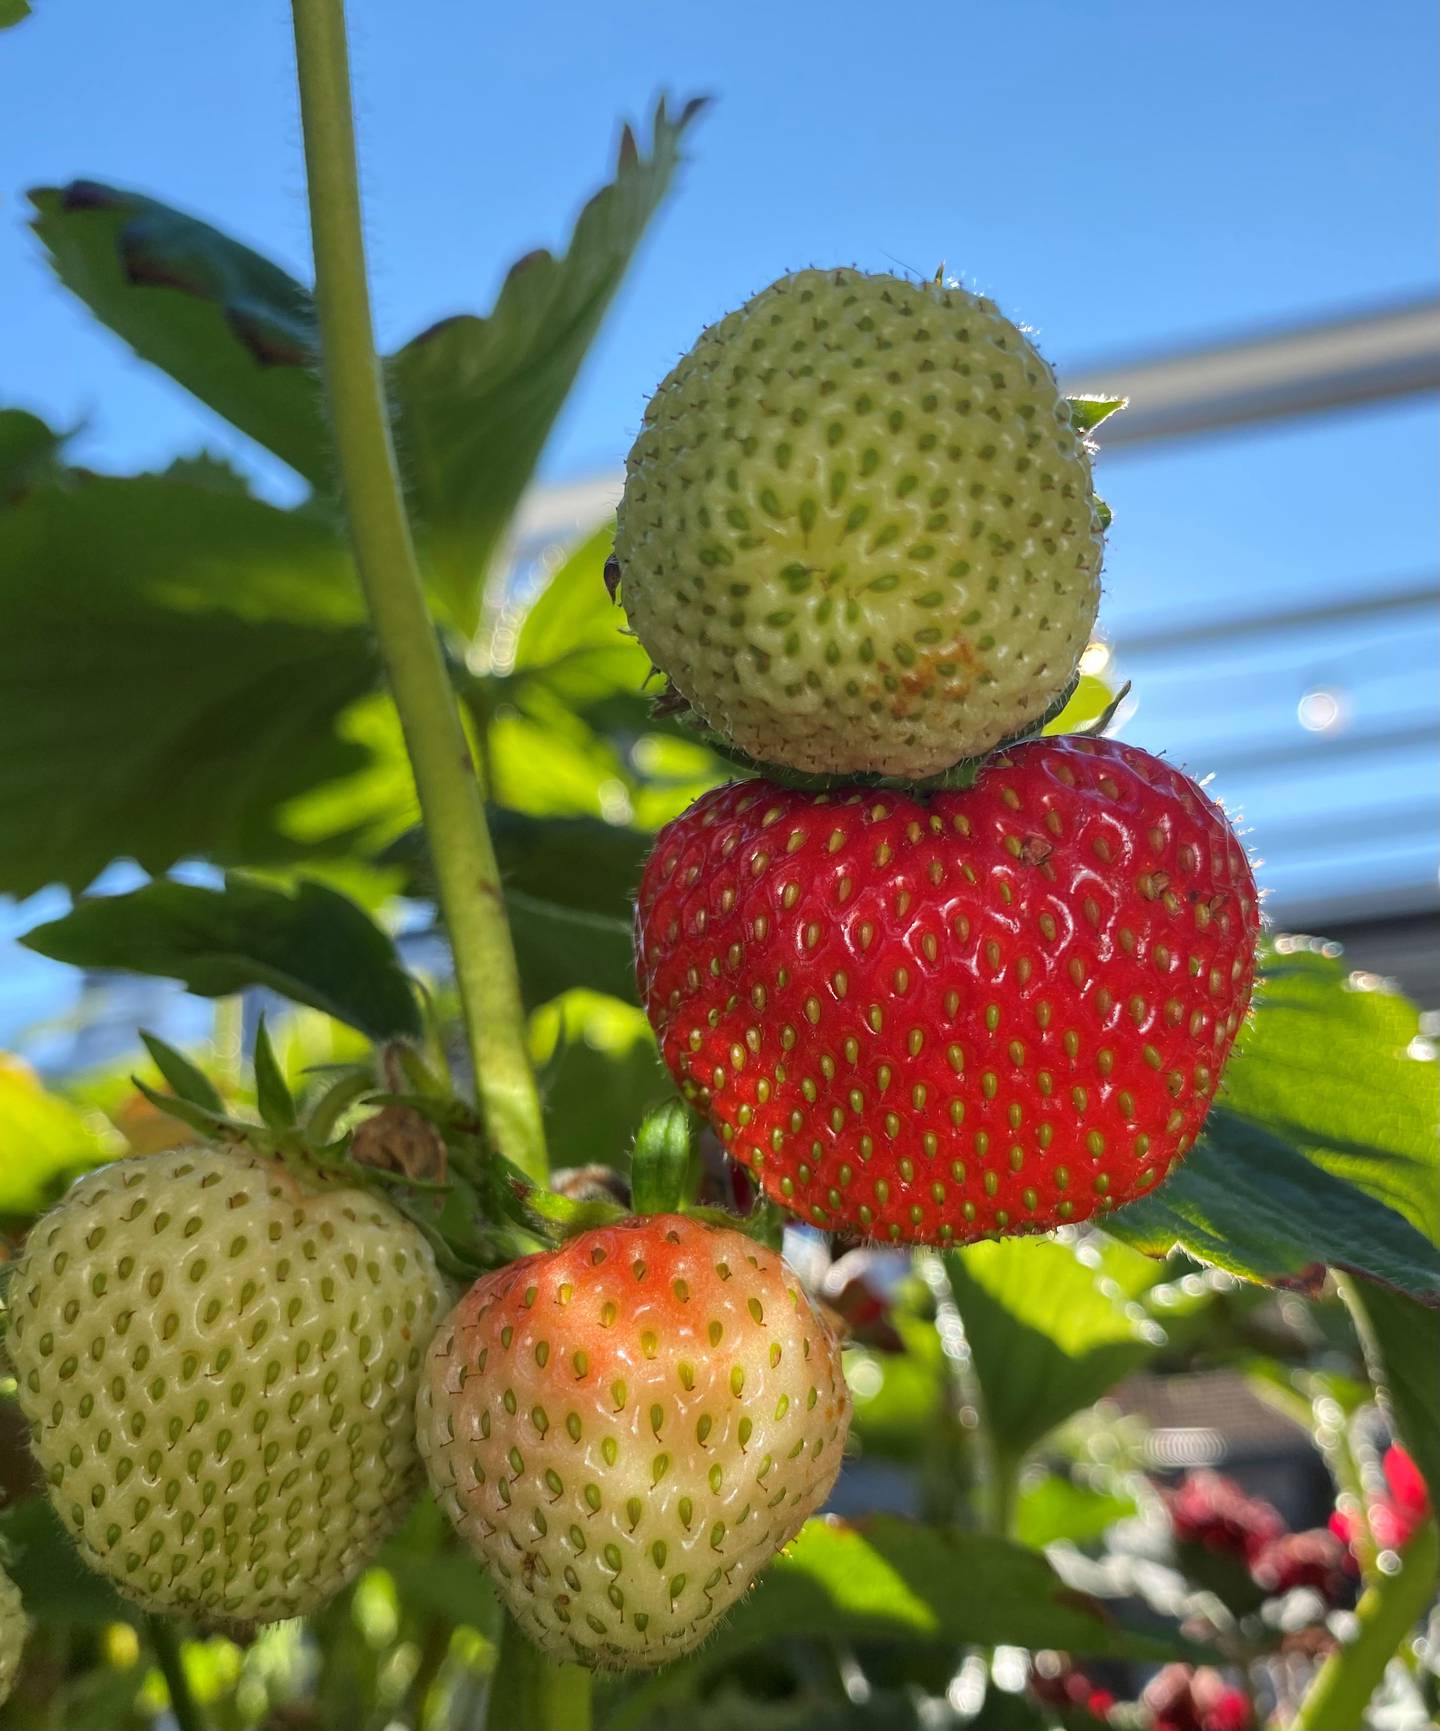 «Jordbær = sommer» har Anne Stensvik kalt dette bildet, og det må vi si oss enig i. Her har hun funnet tre bær i tre forskjellige modningsfaser, som betyr hun kan glede seg til flere jordbær utover sommeren. Nam!